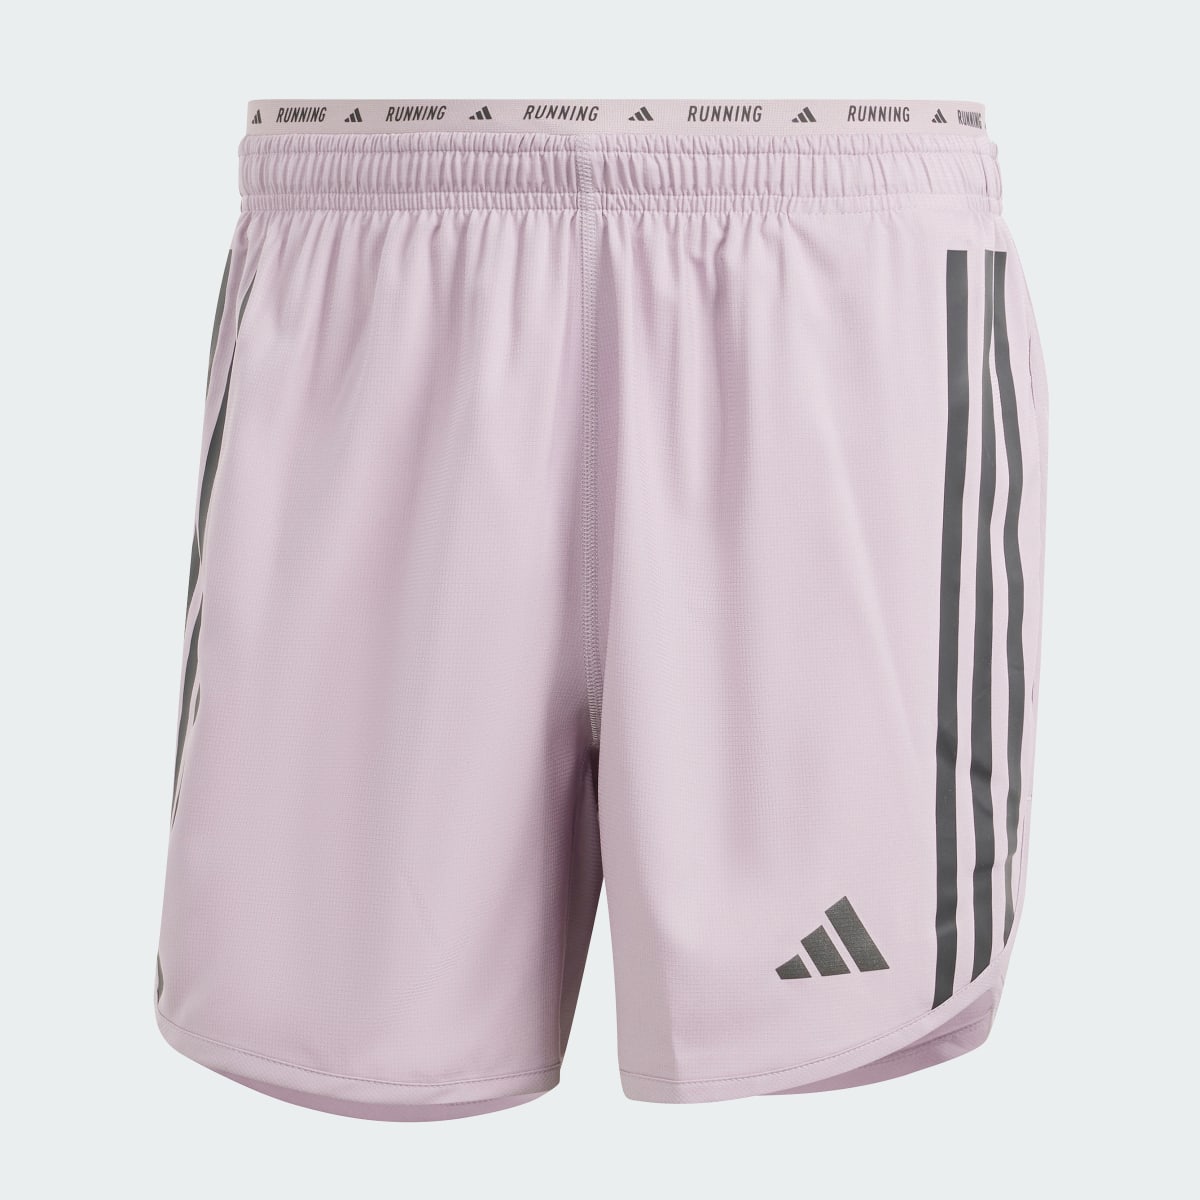 Adidas Own the Run 3-Stripes Shorts. 4